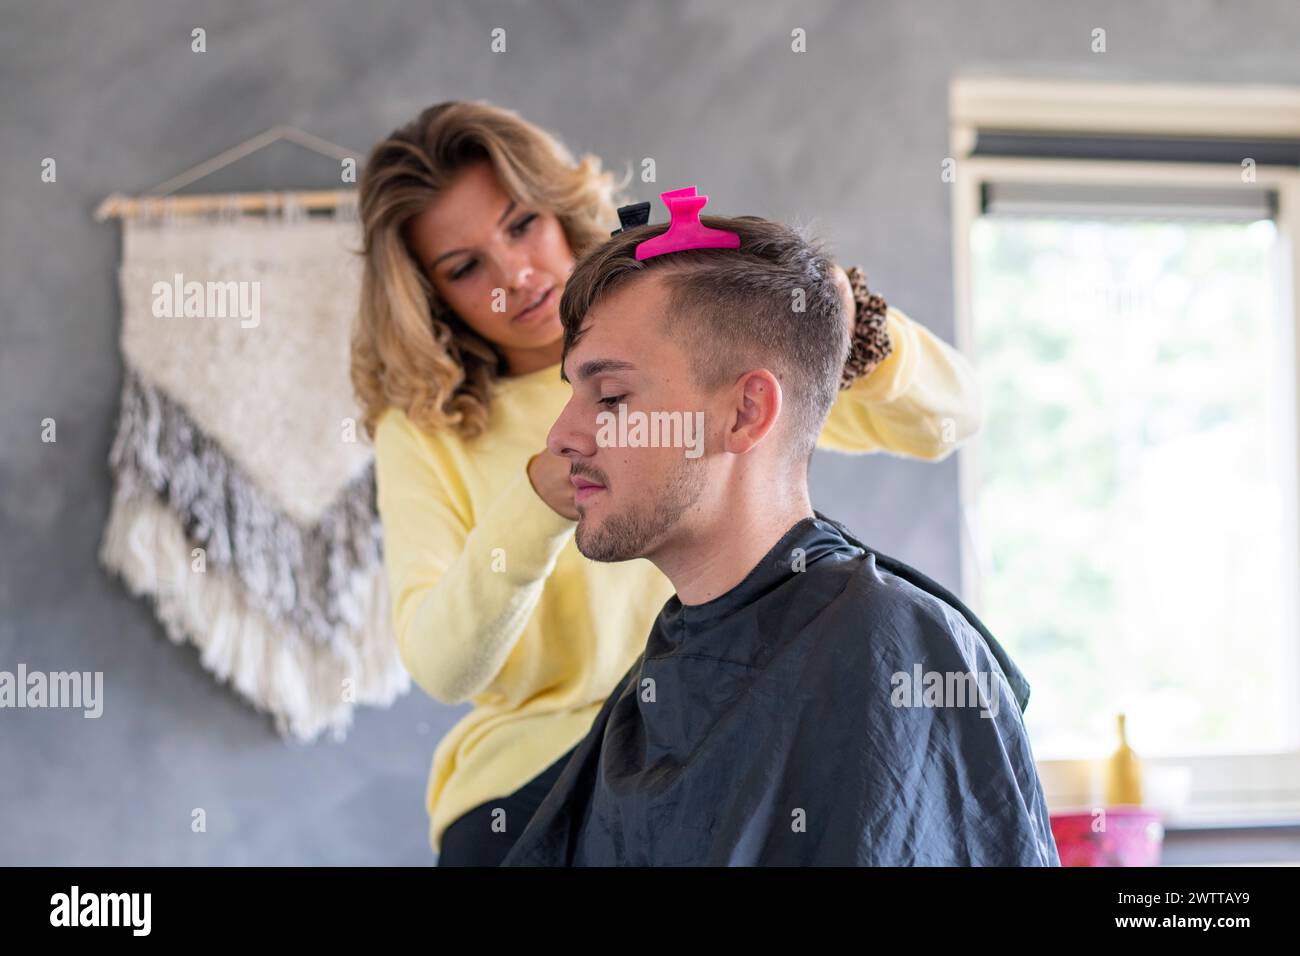 Friseur verleiht einem männlichen Kunden einen neuen Haarschnitt in gemütlicher häuslicher Einrichtung. Stockfoto